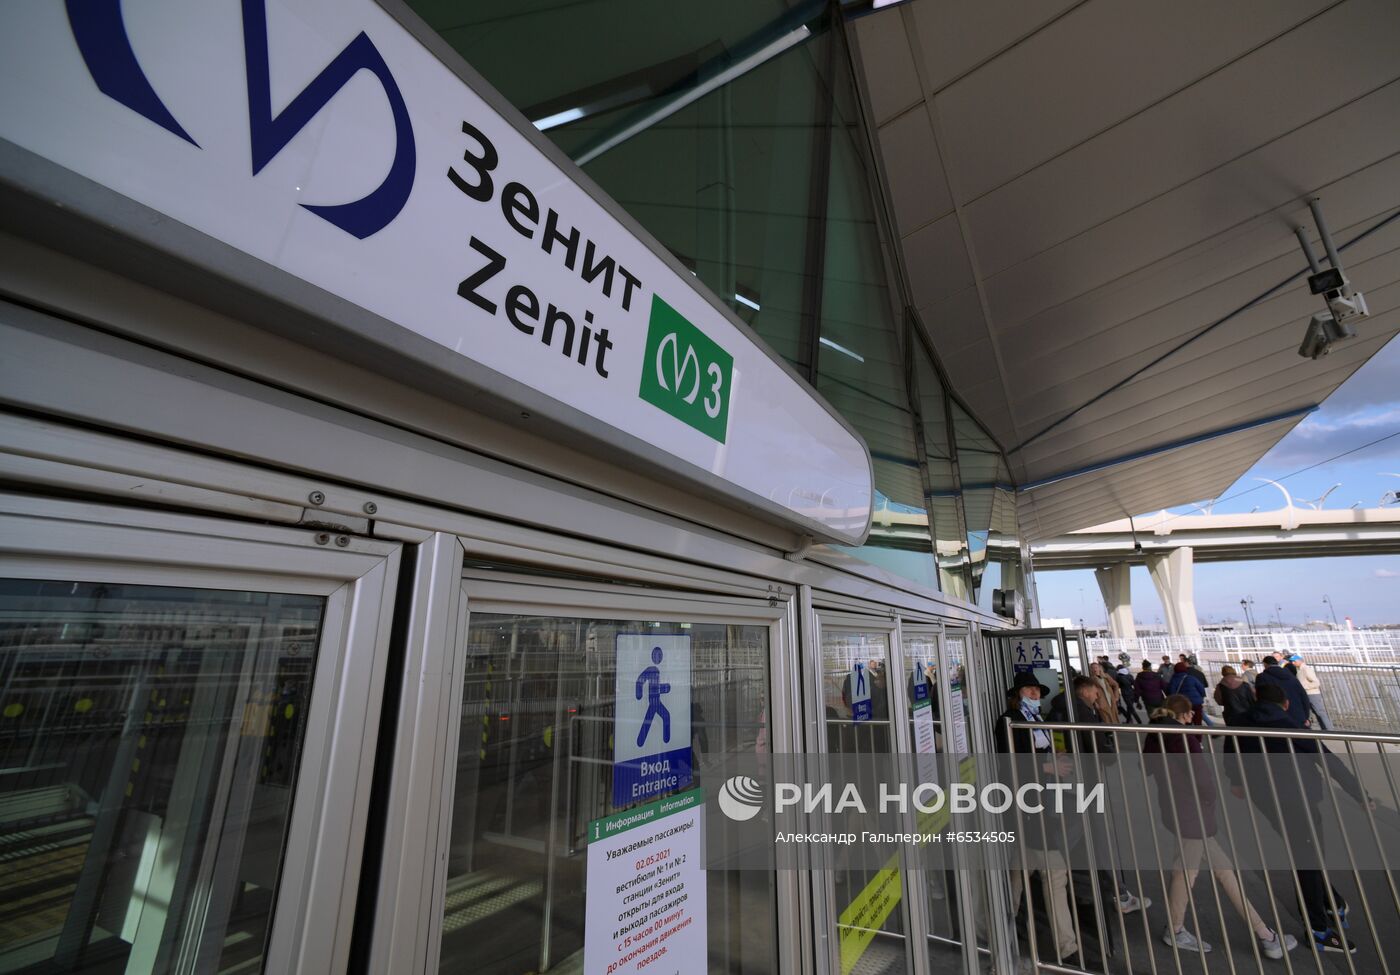 Открытие станции метро "Зенит" в Санкт-Петербурге